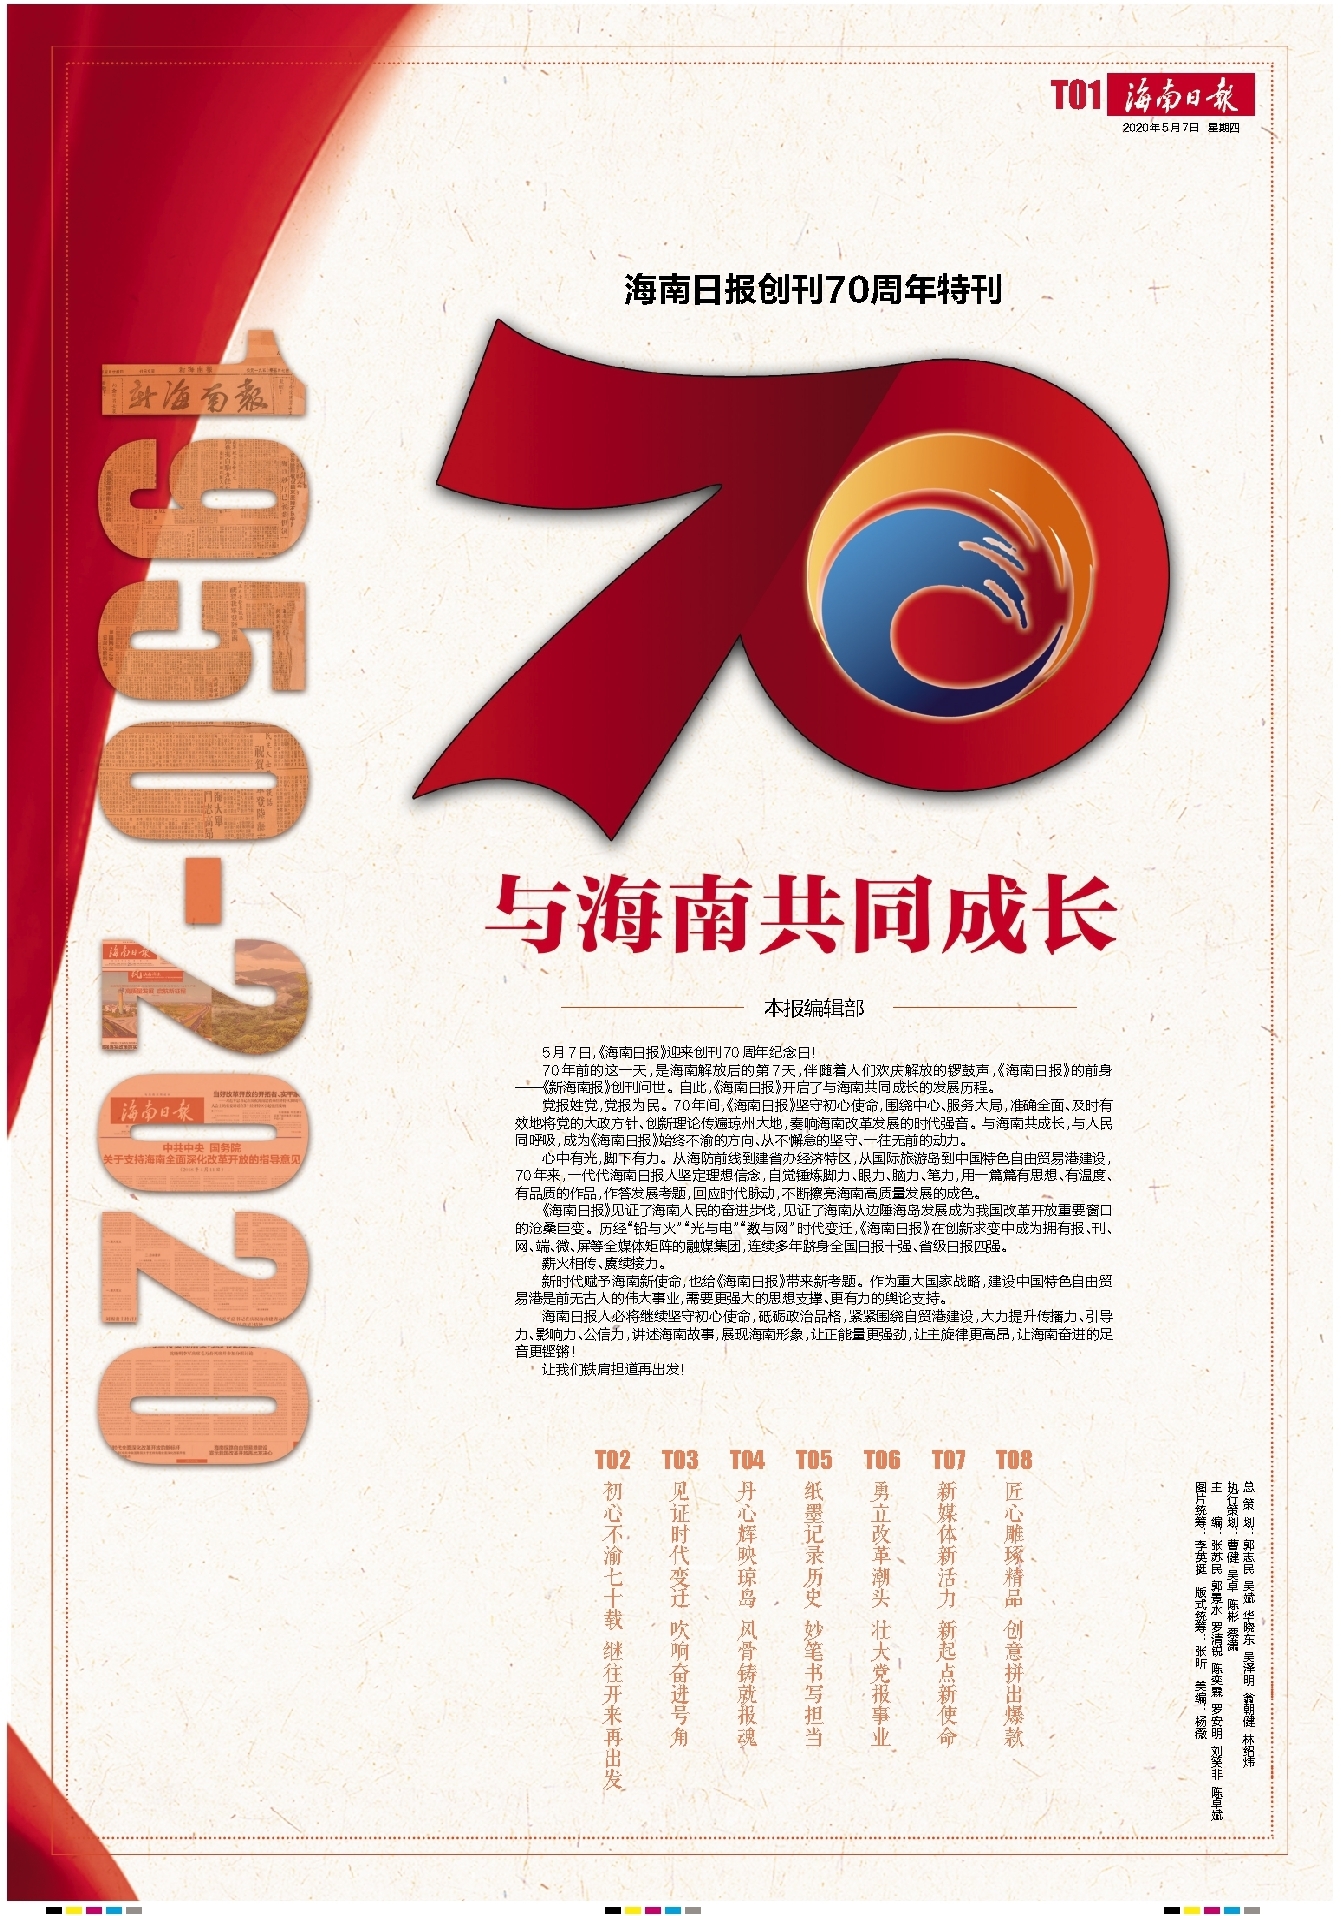 《海南日报》创刊70周年特刊 与海南共同成长 封面新闻